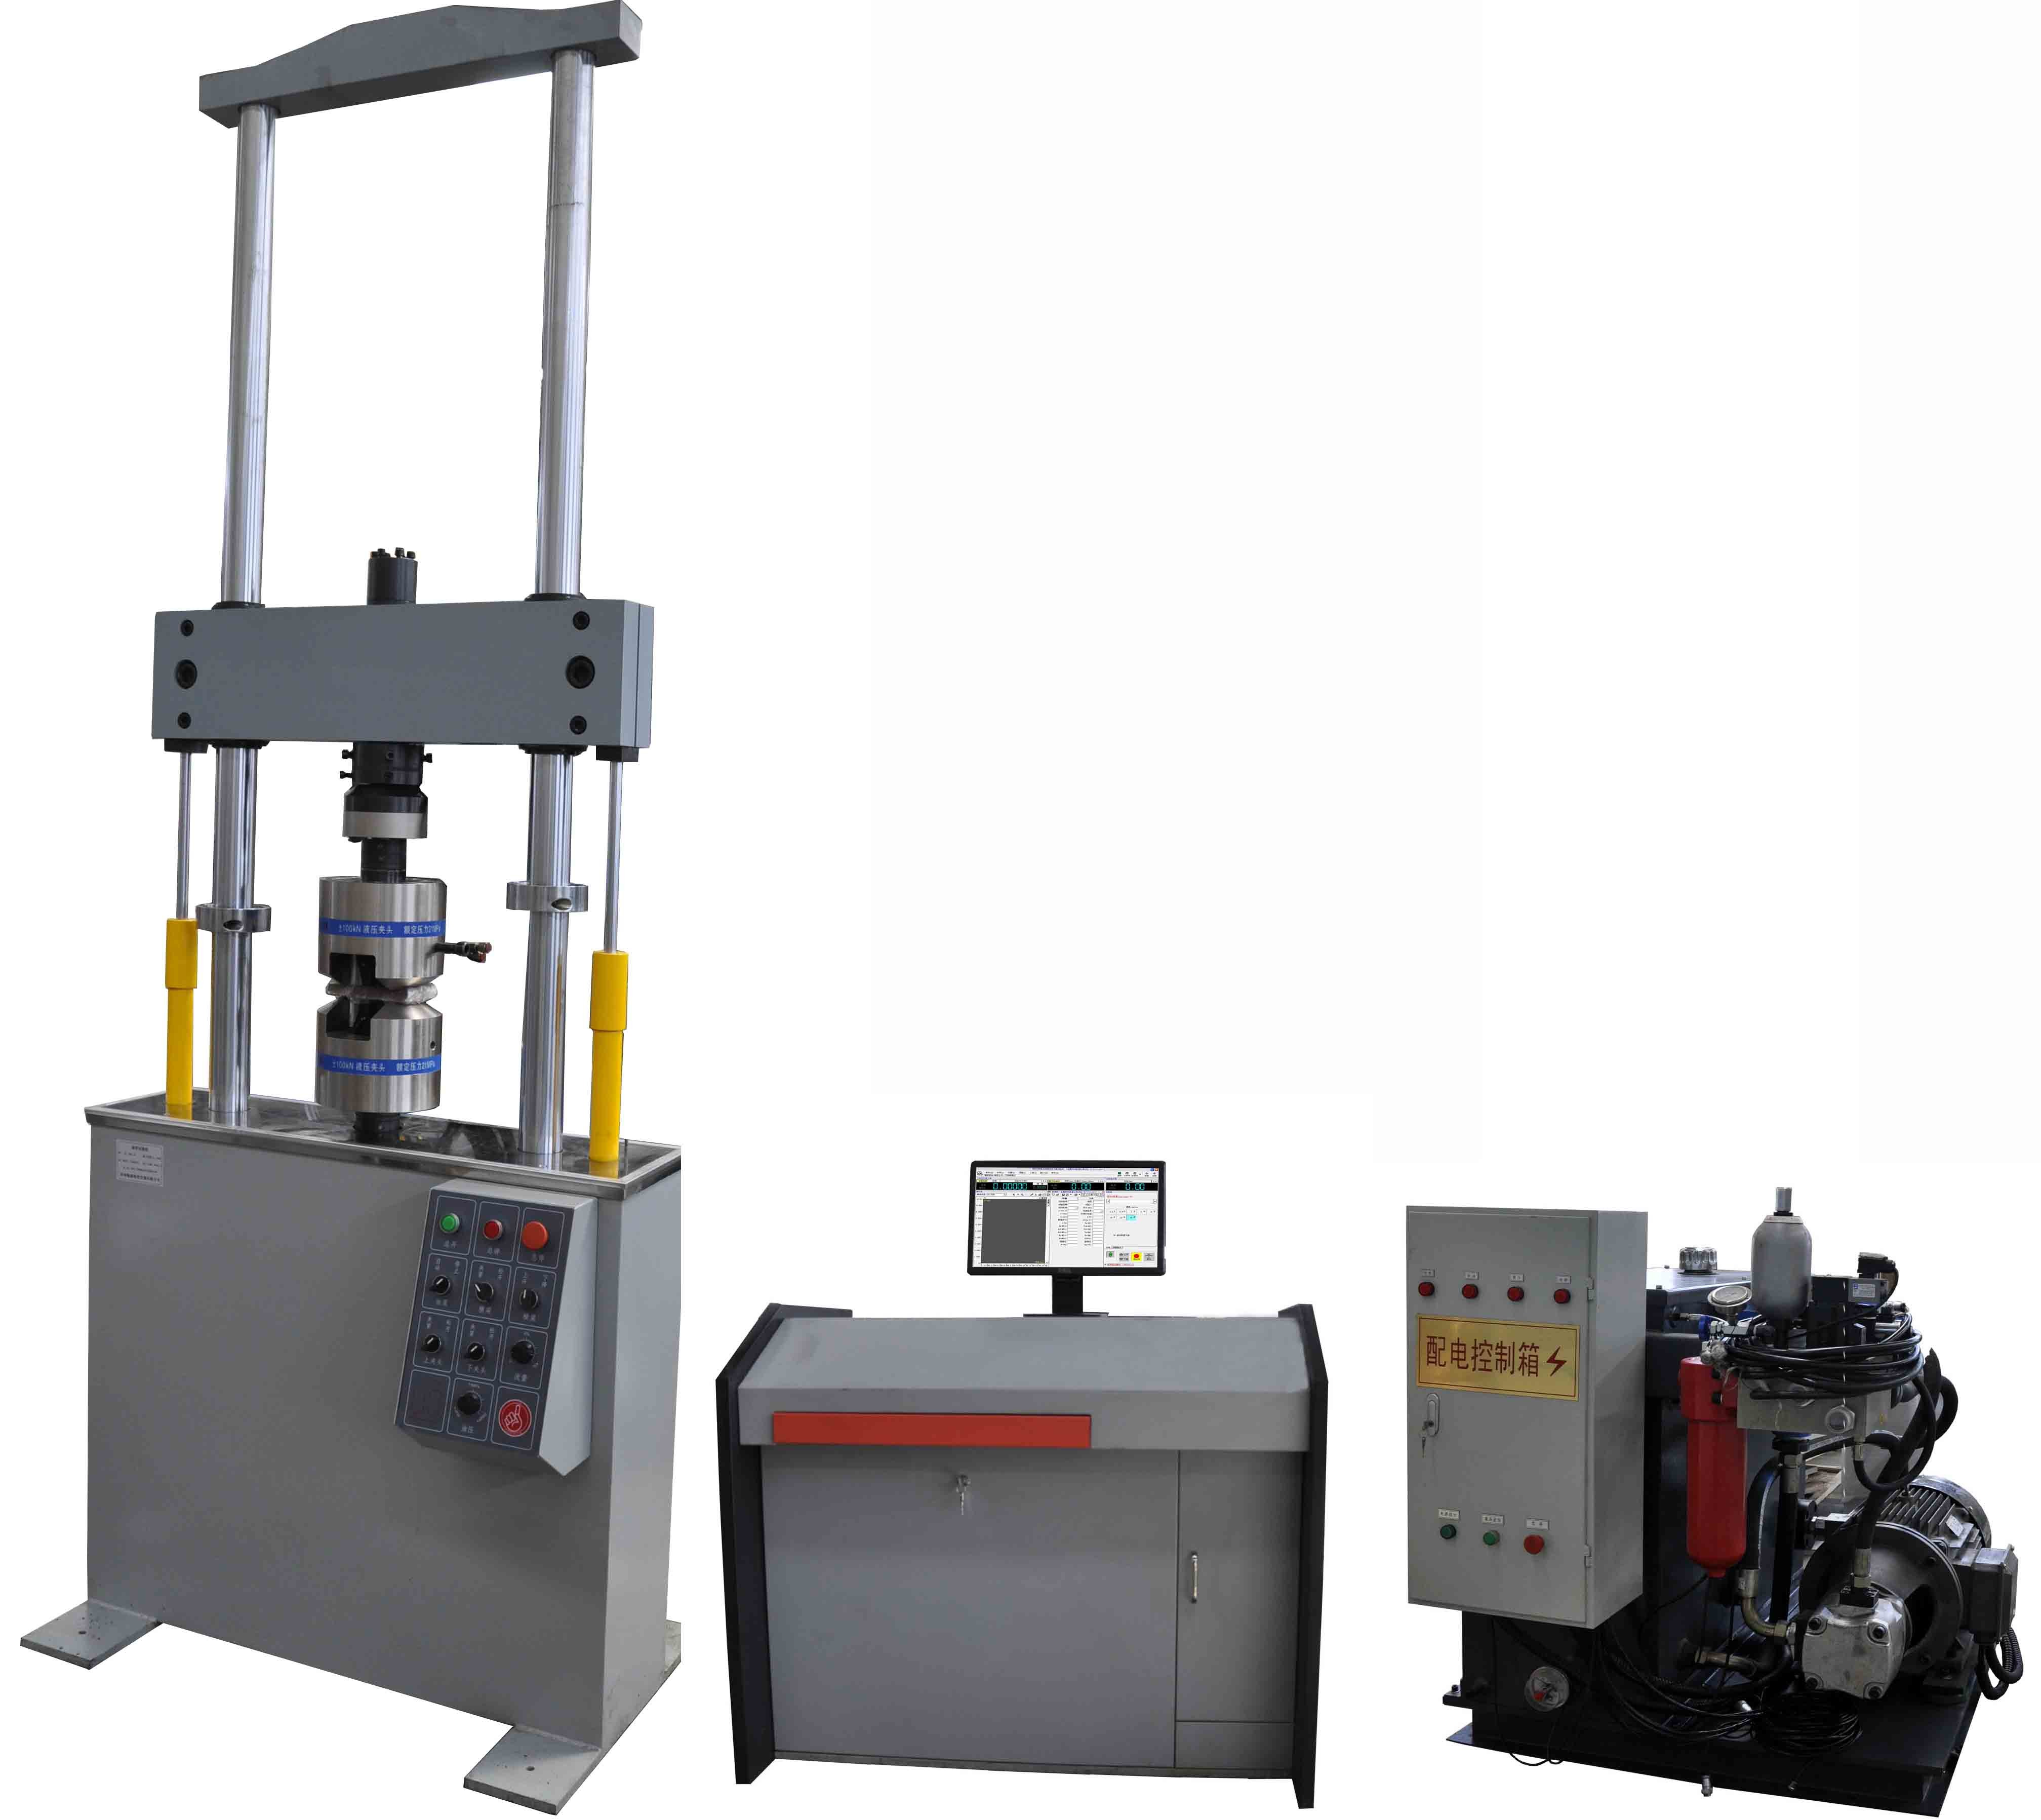 30 KN Servo idraulica macchina di prova universale per la prova delle proprietà meccaniche 750 mm